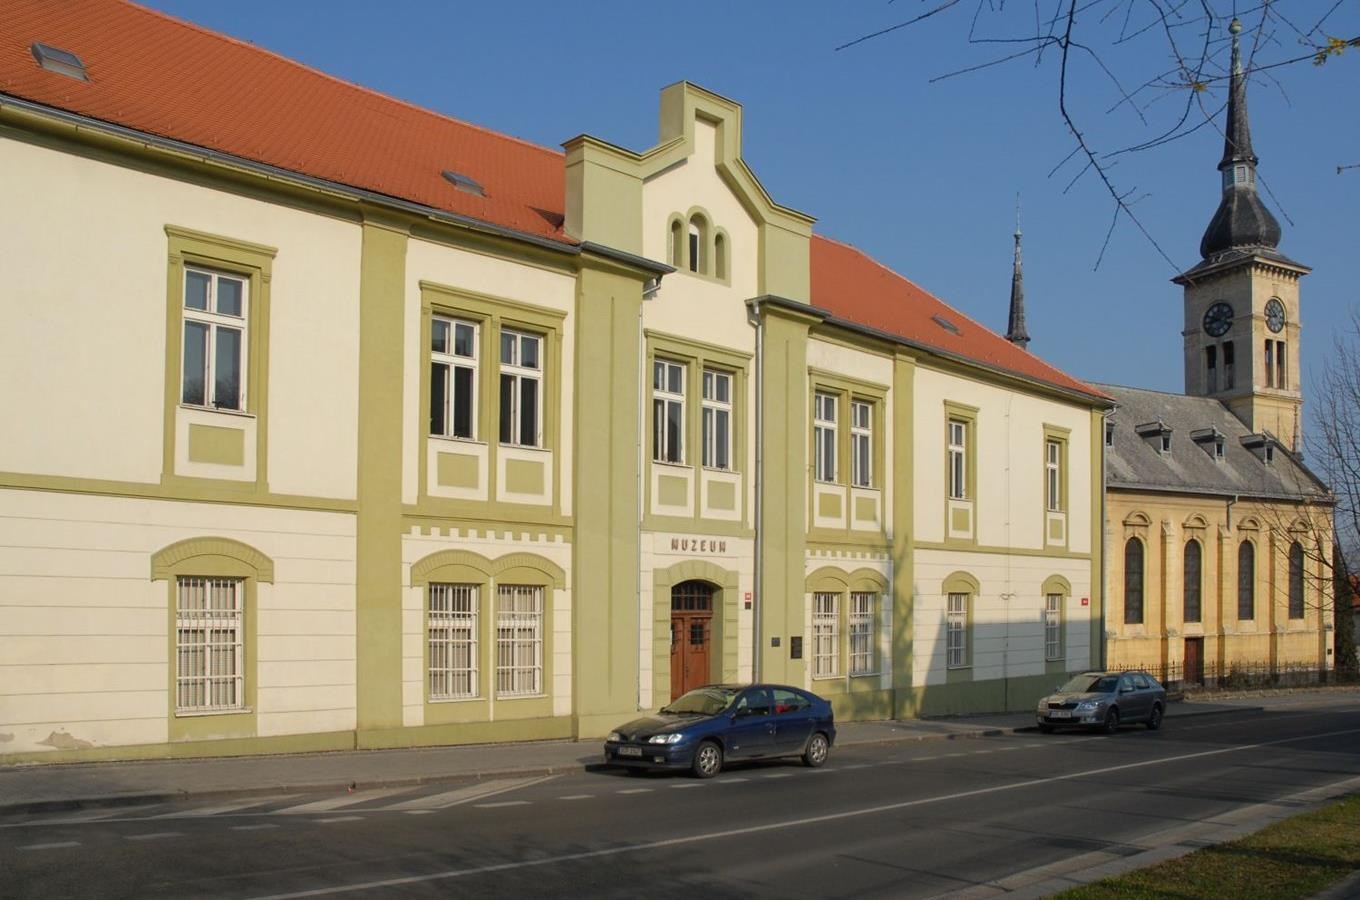 Regionální muzeum K. A. Polánka v Žatci 